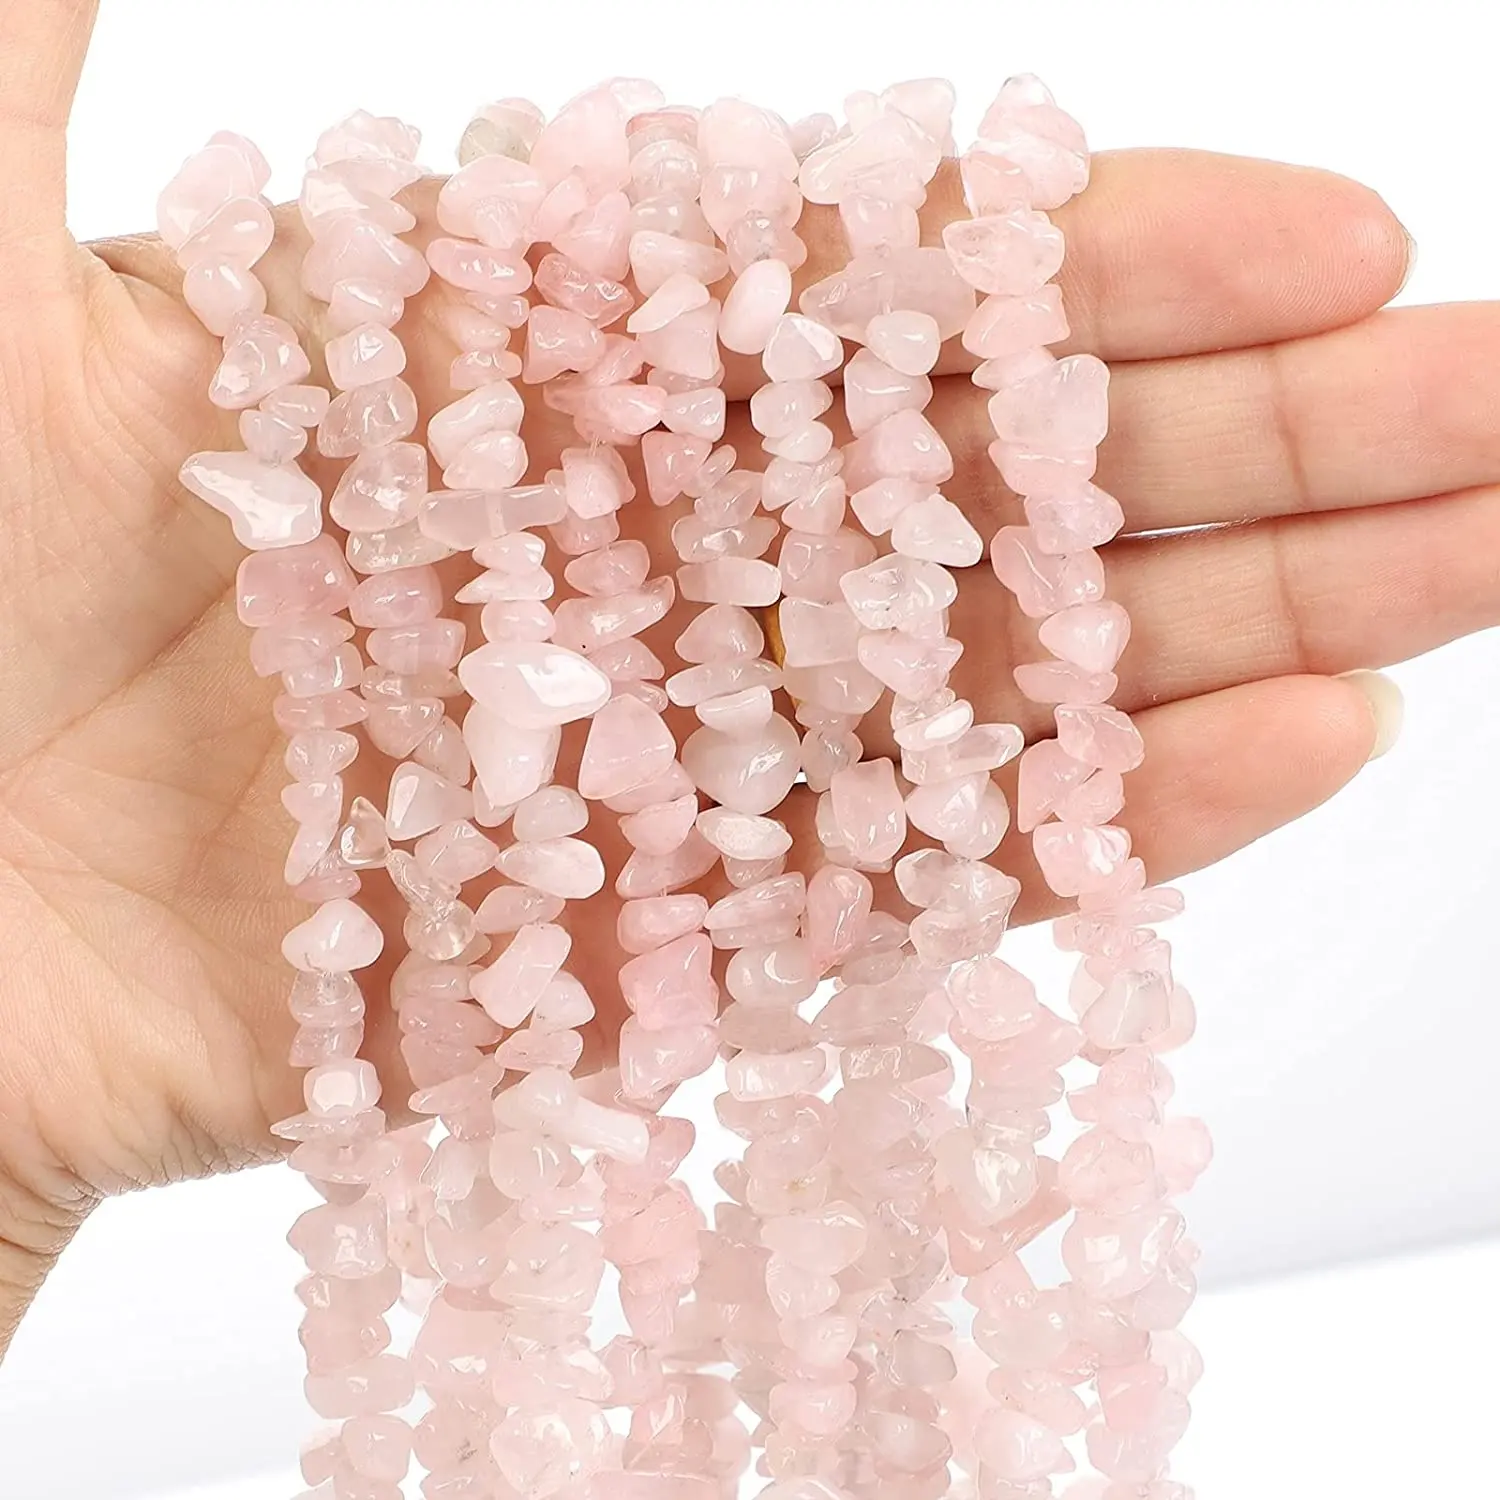 Natural Chip Stone Beads Pink Crystal 5mm to 8mm Irregular Rose Quartz Gemstone Healing Crystal Loose Rocks Bead